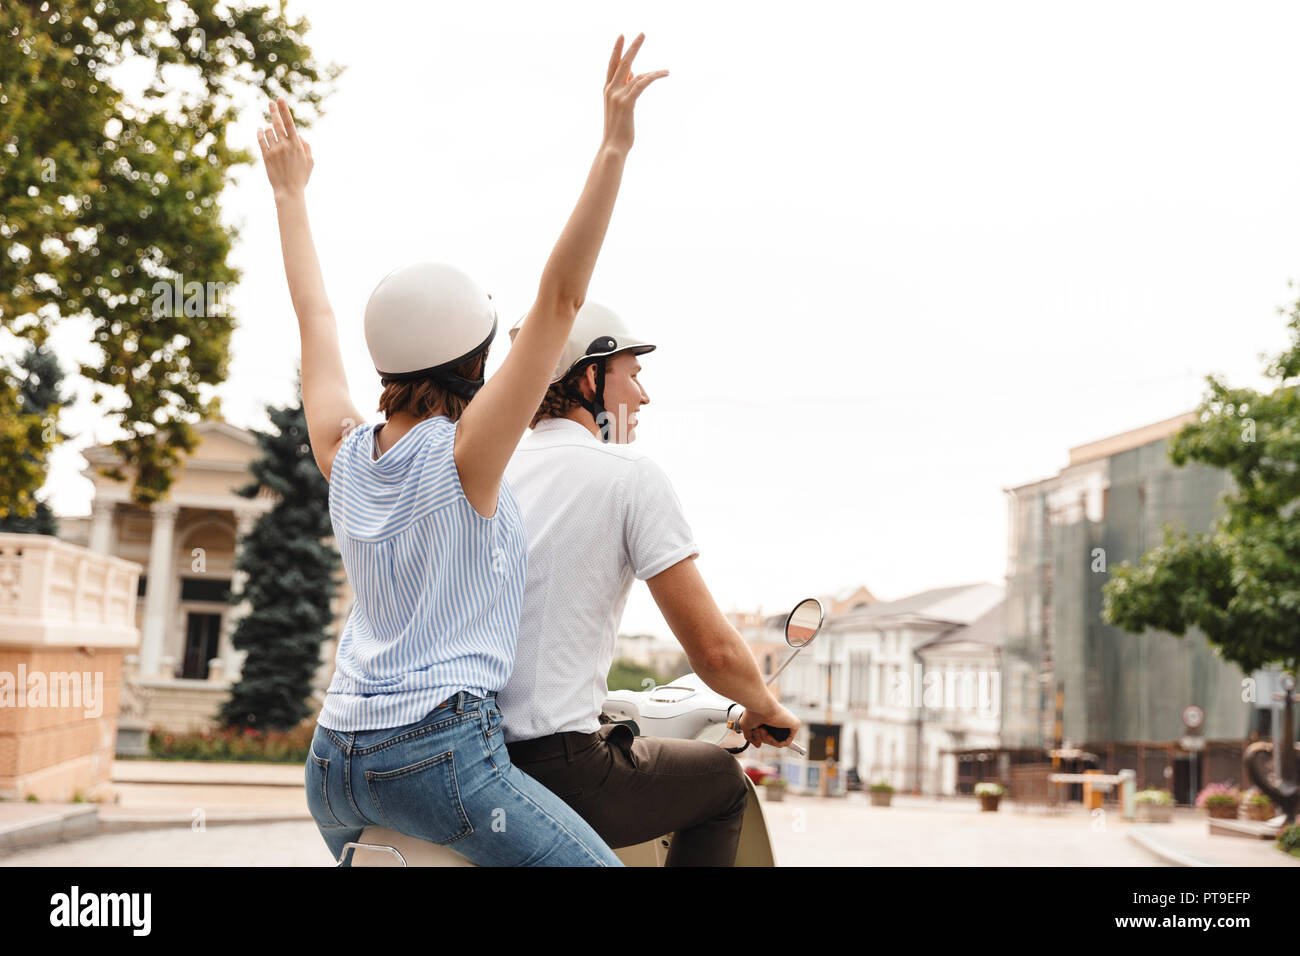 Rückansicht des fröhlichen jungen Paares im Sturzhelme reiten auf Roller zusammen im Freien Stockfoto